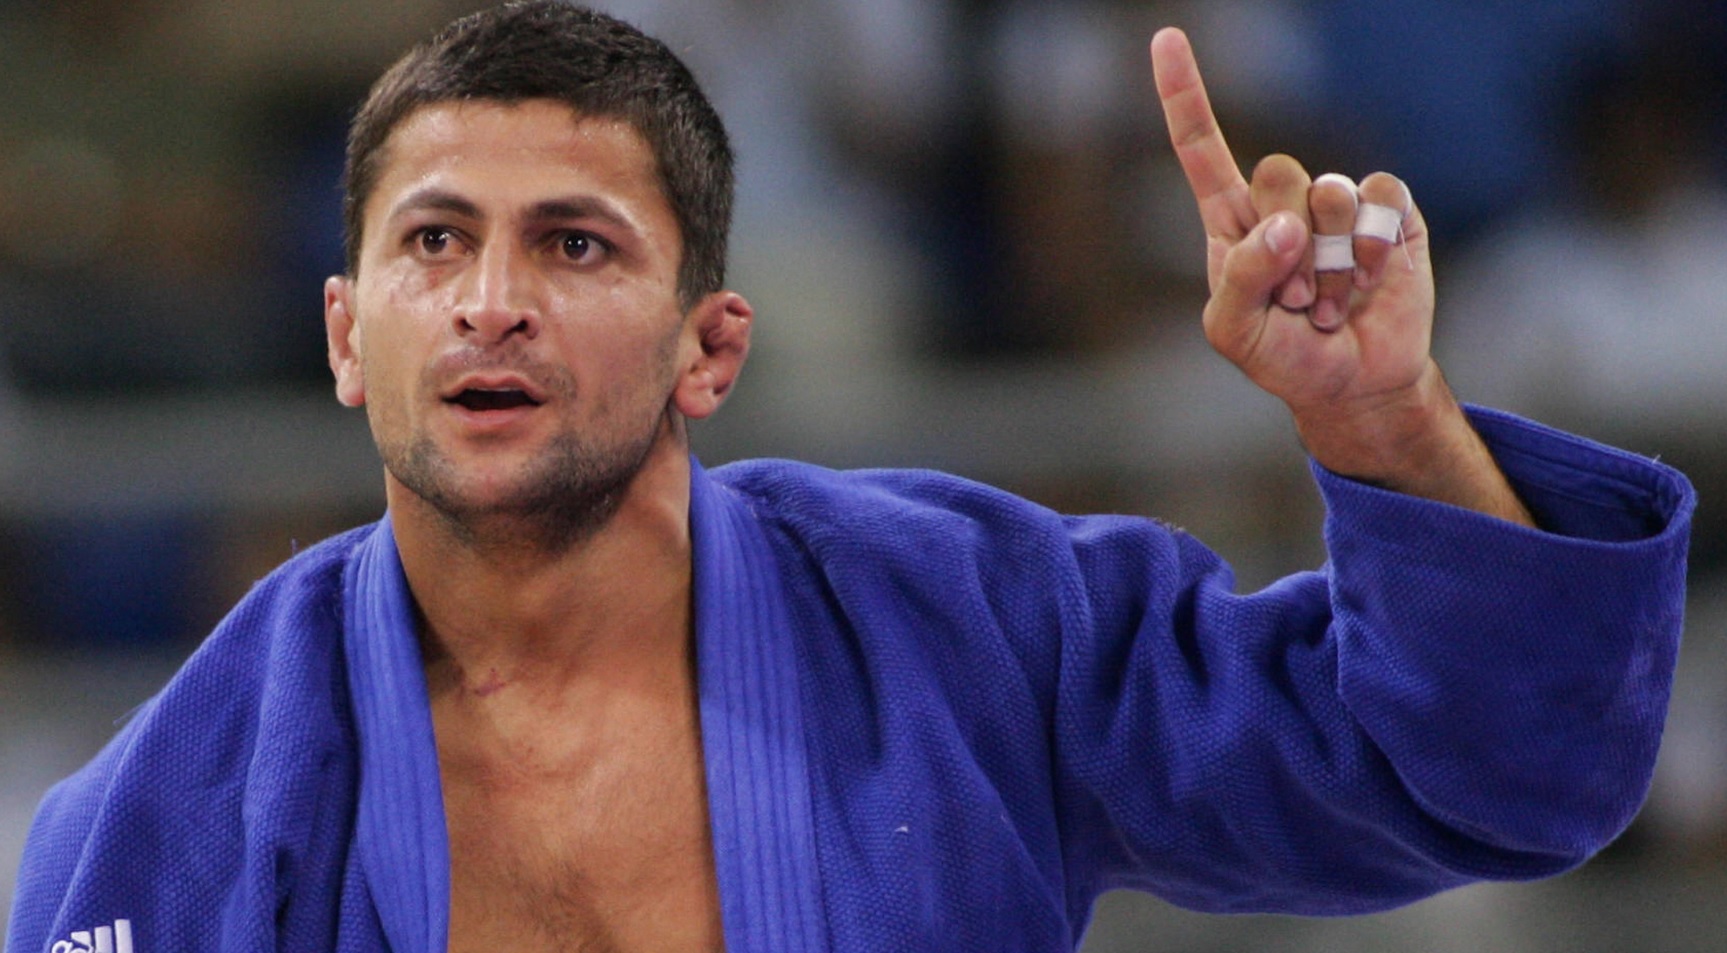 Campionul olimpic la judo Zurab Zviadauri a fost arestat pentru crimă cu premeditare. Riscă 15 ani de închisoare